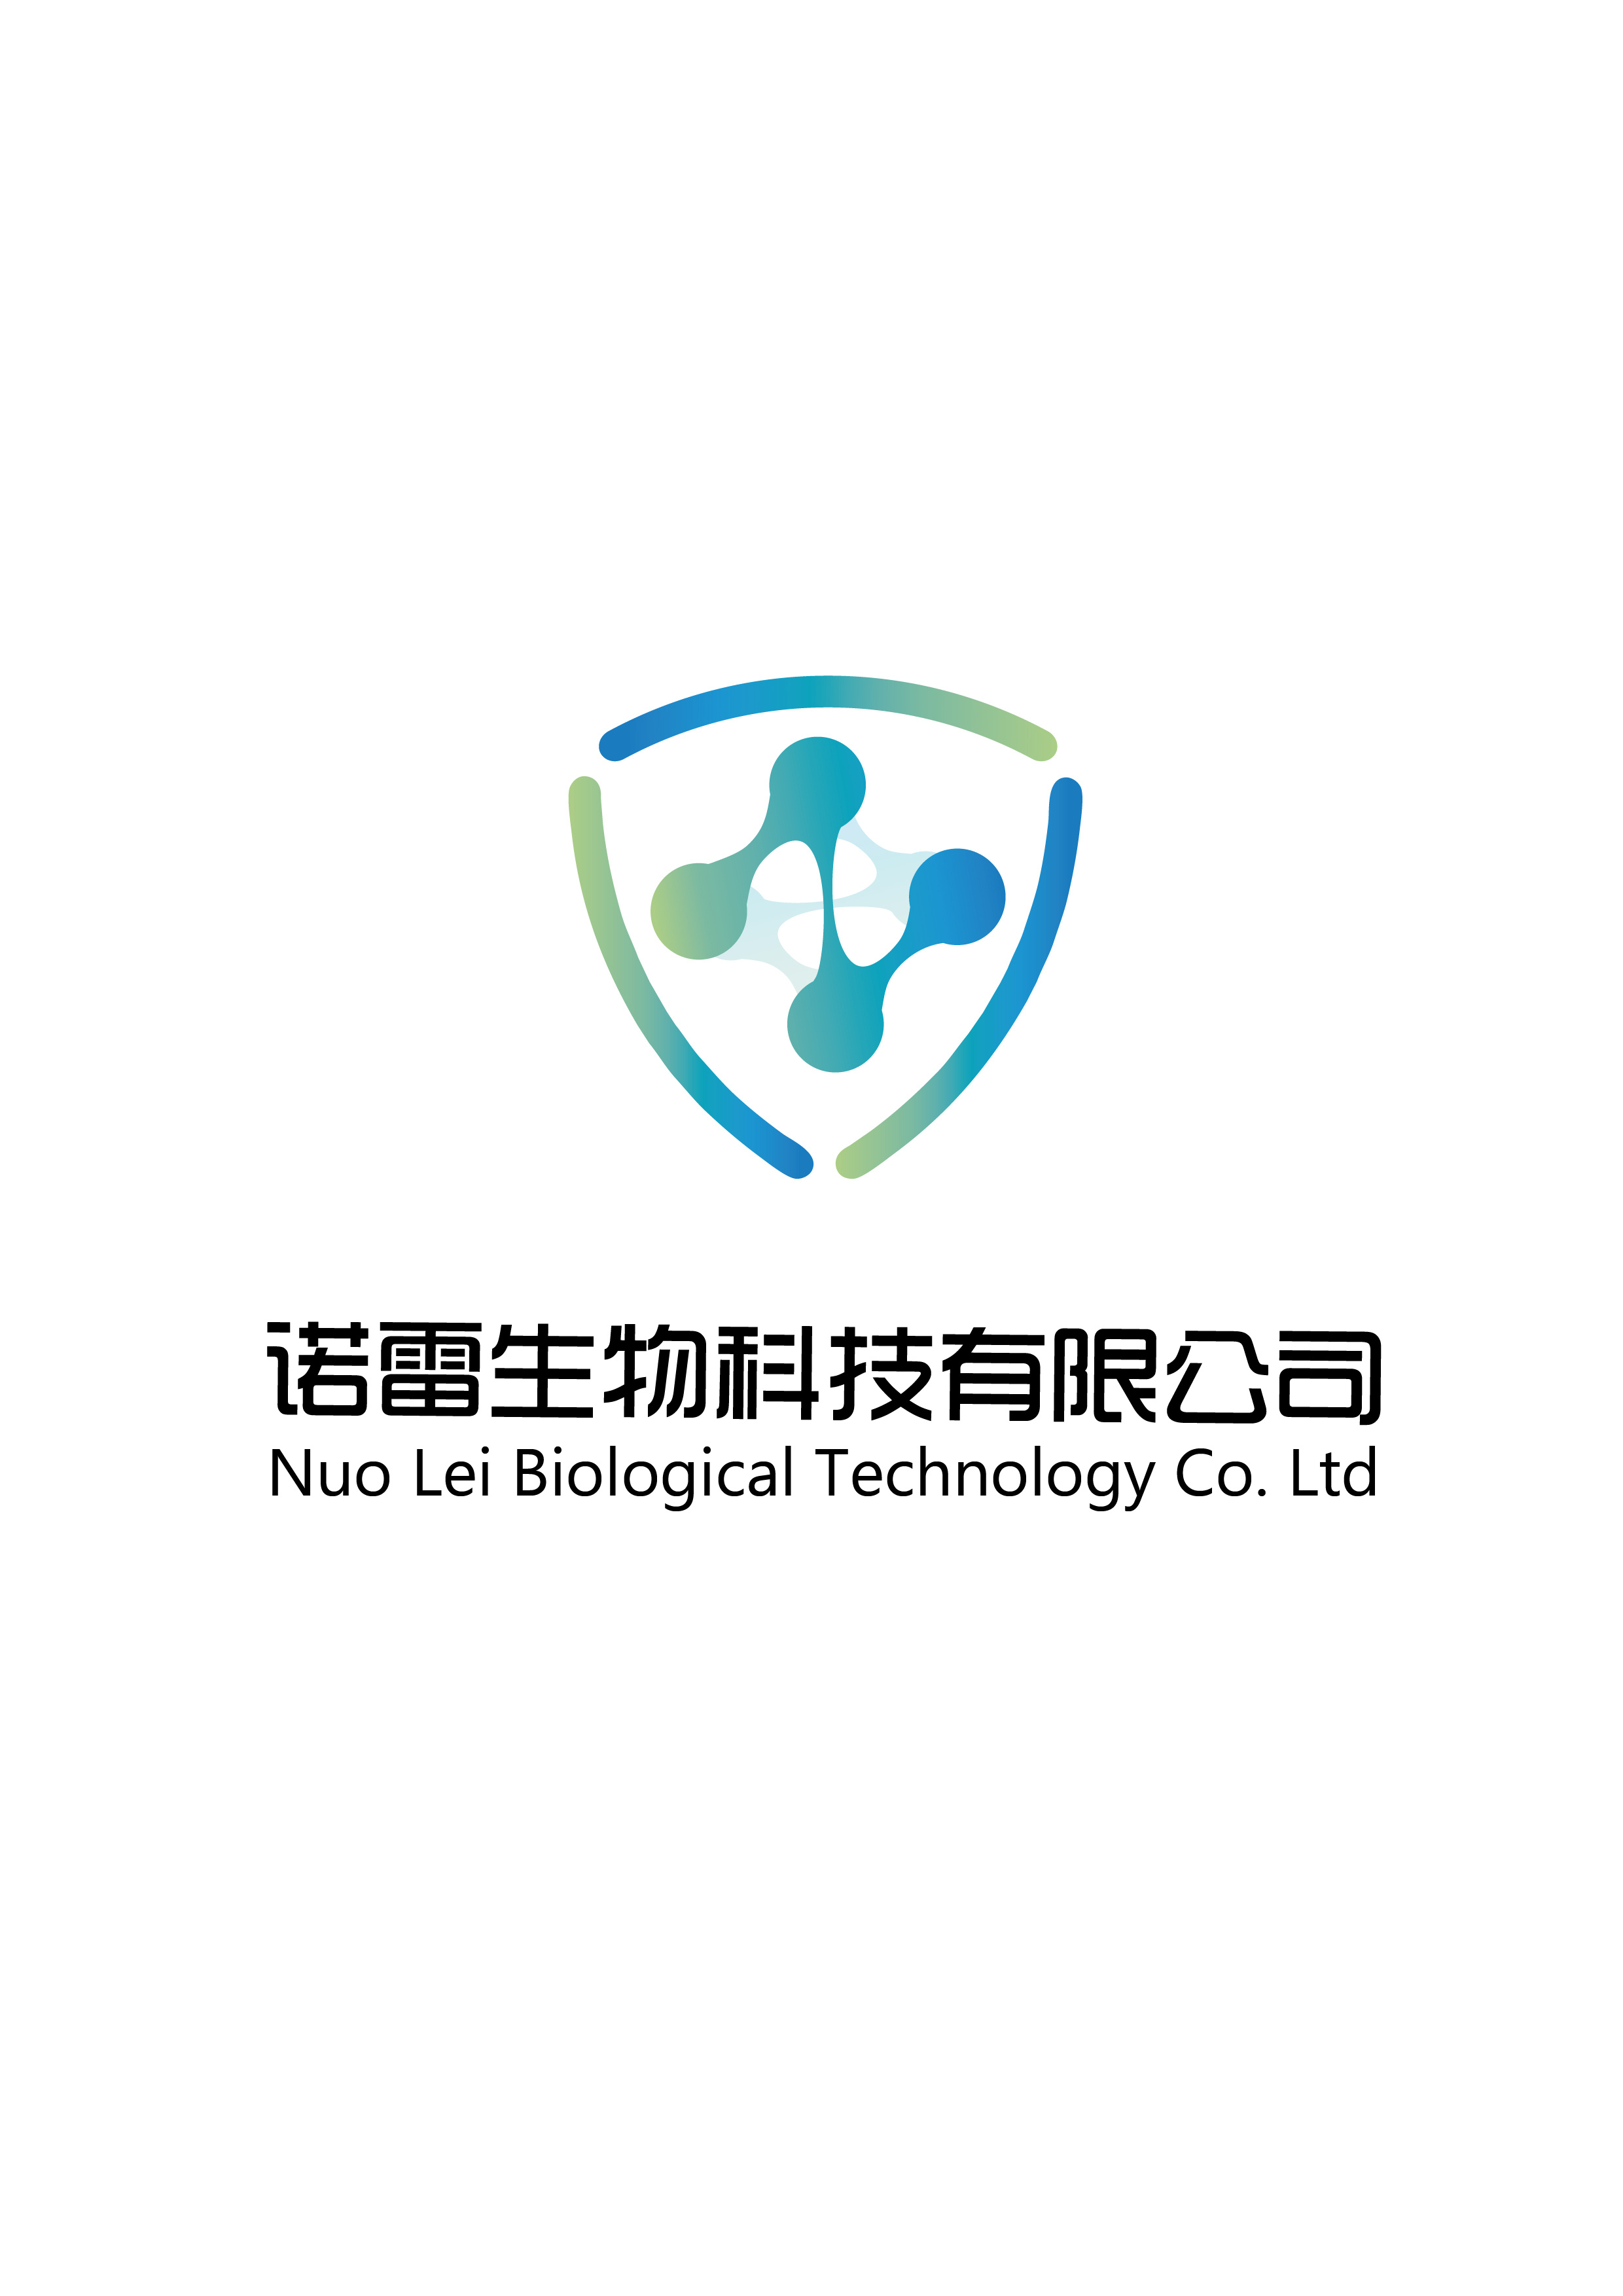 诺蕾生物科技有限公司logo设计